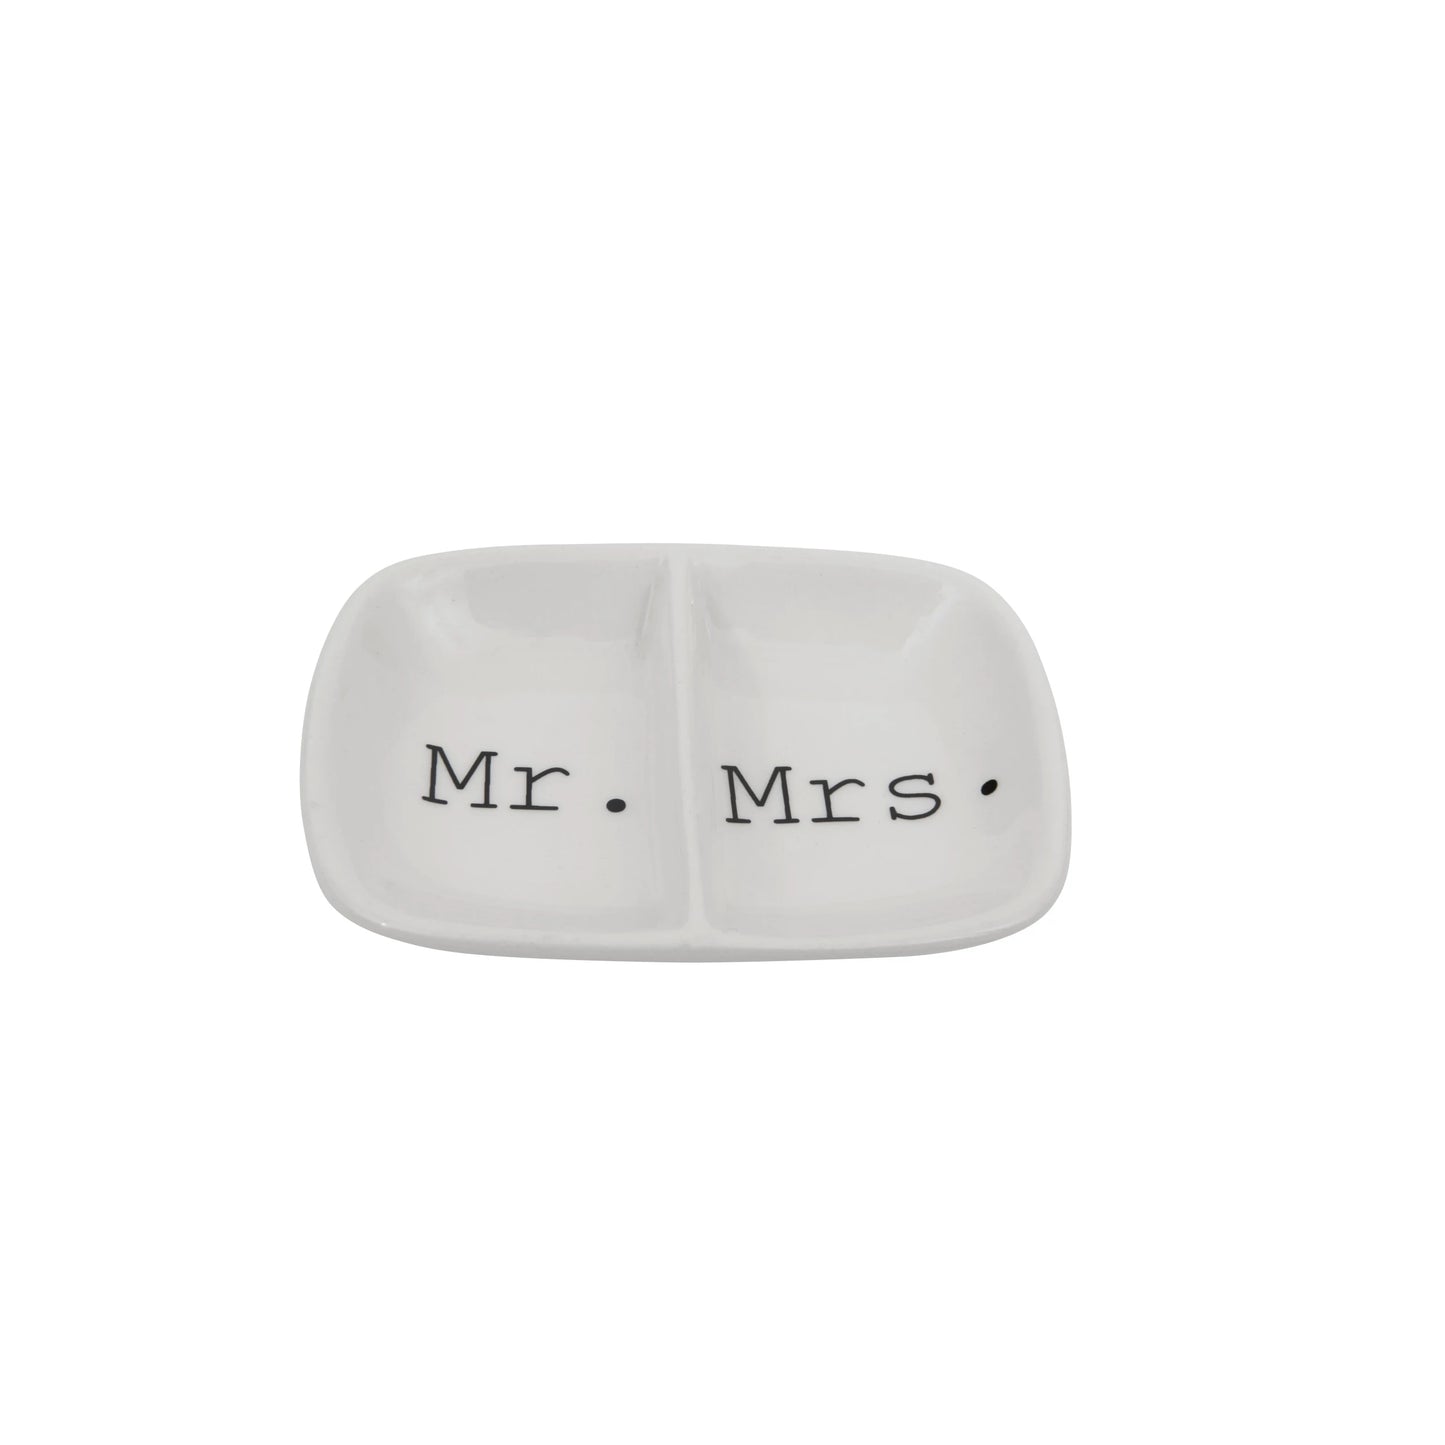 Mr. + Mrs. Ceramic Dish